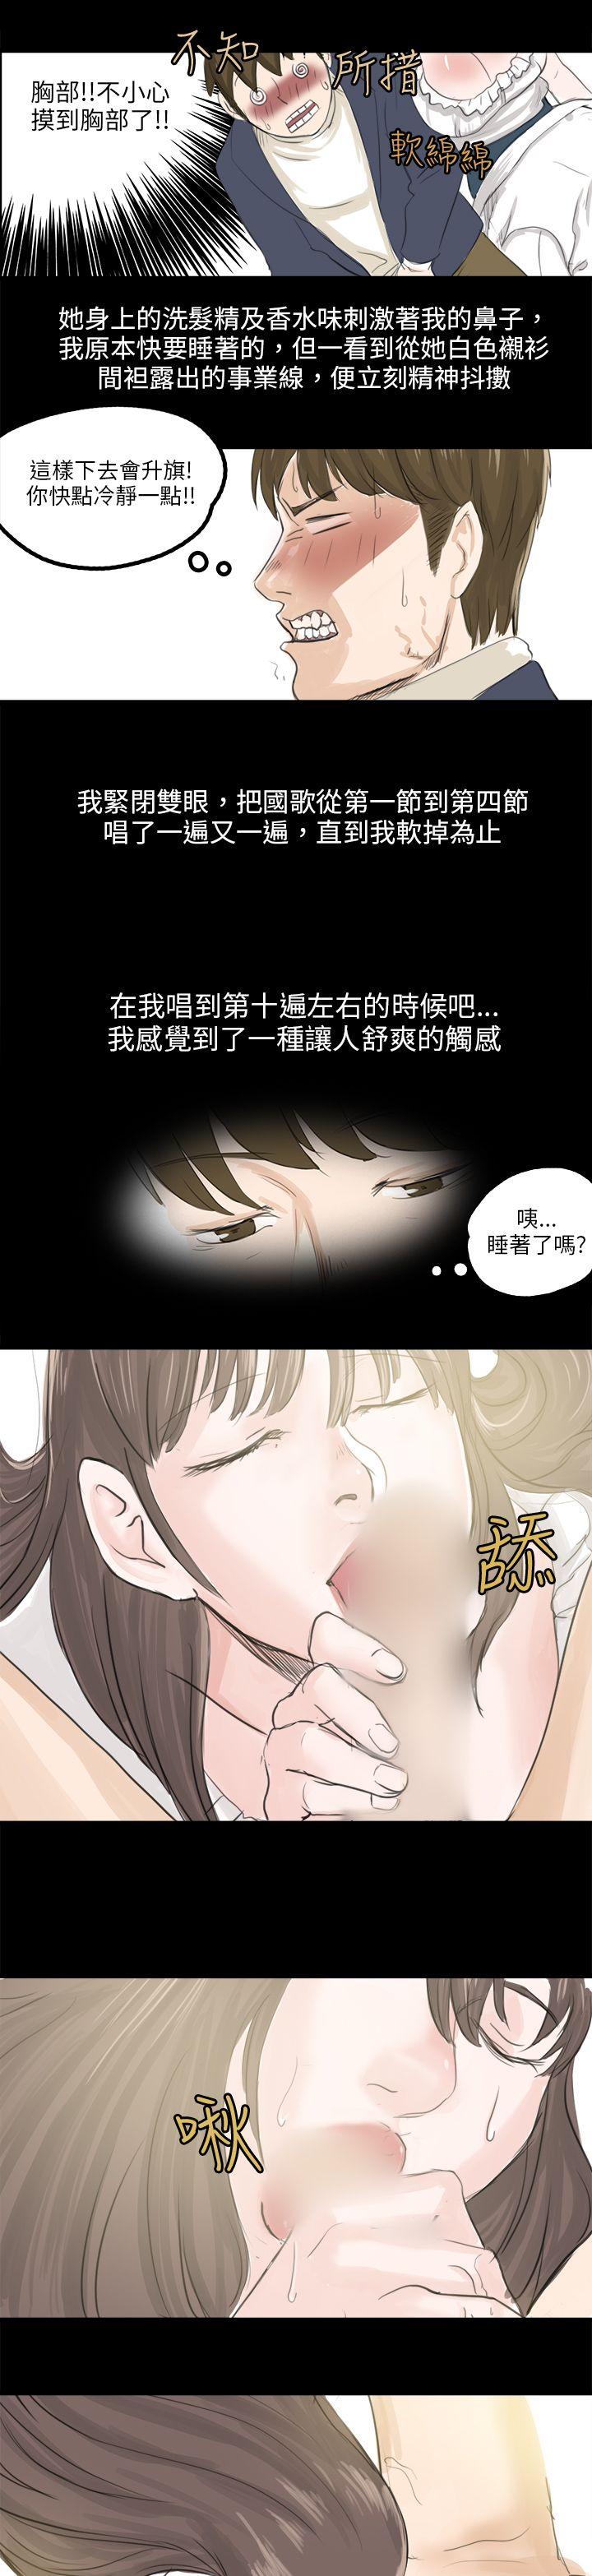 韩国污漫画 秘密Story 转运站里遇见的女人(上) 13